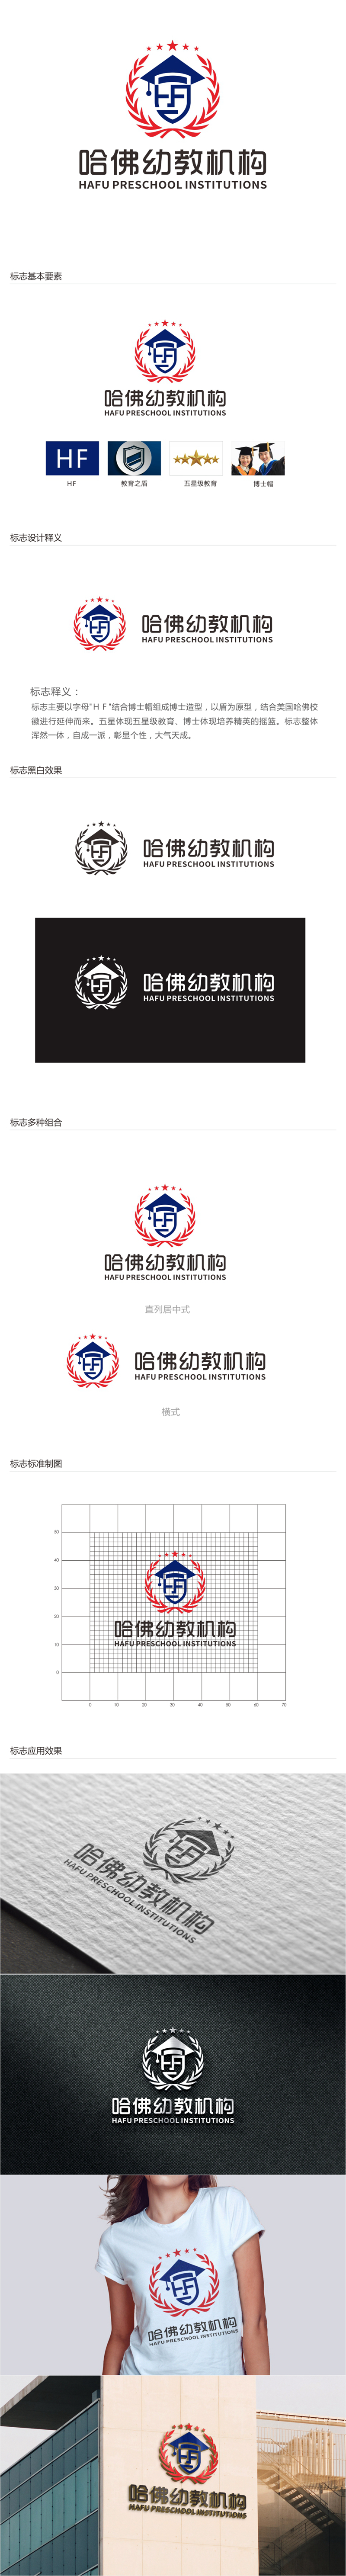 唐国强的哈佛幼教机构logo设计